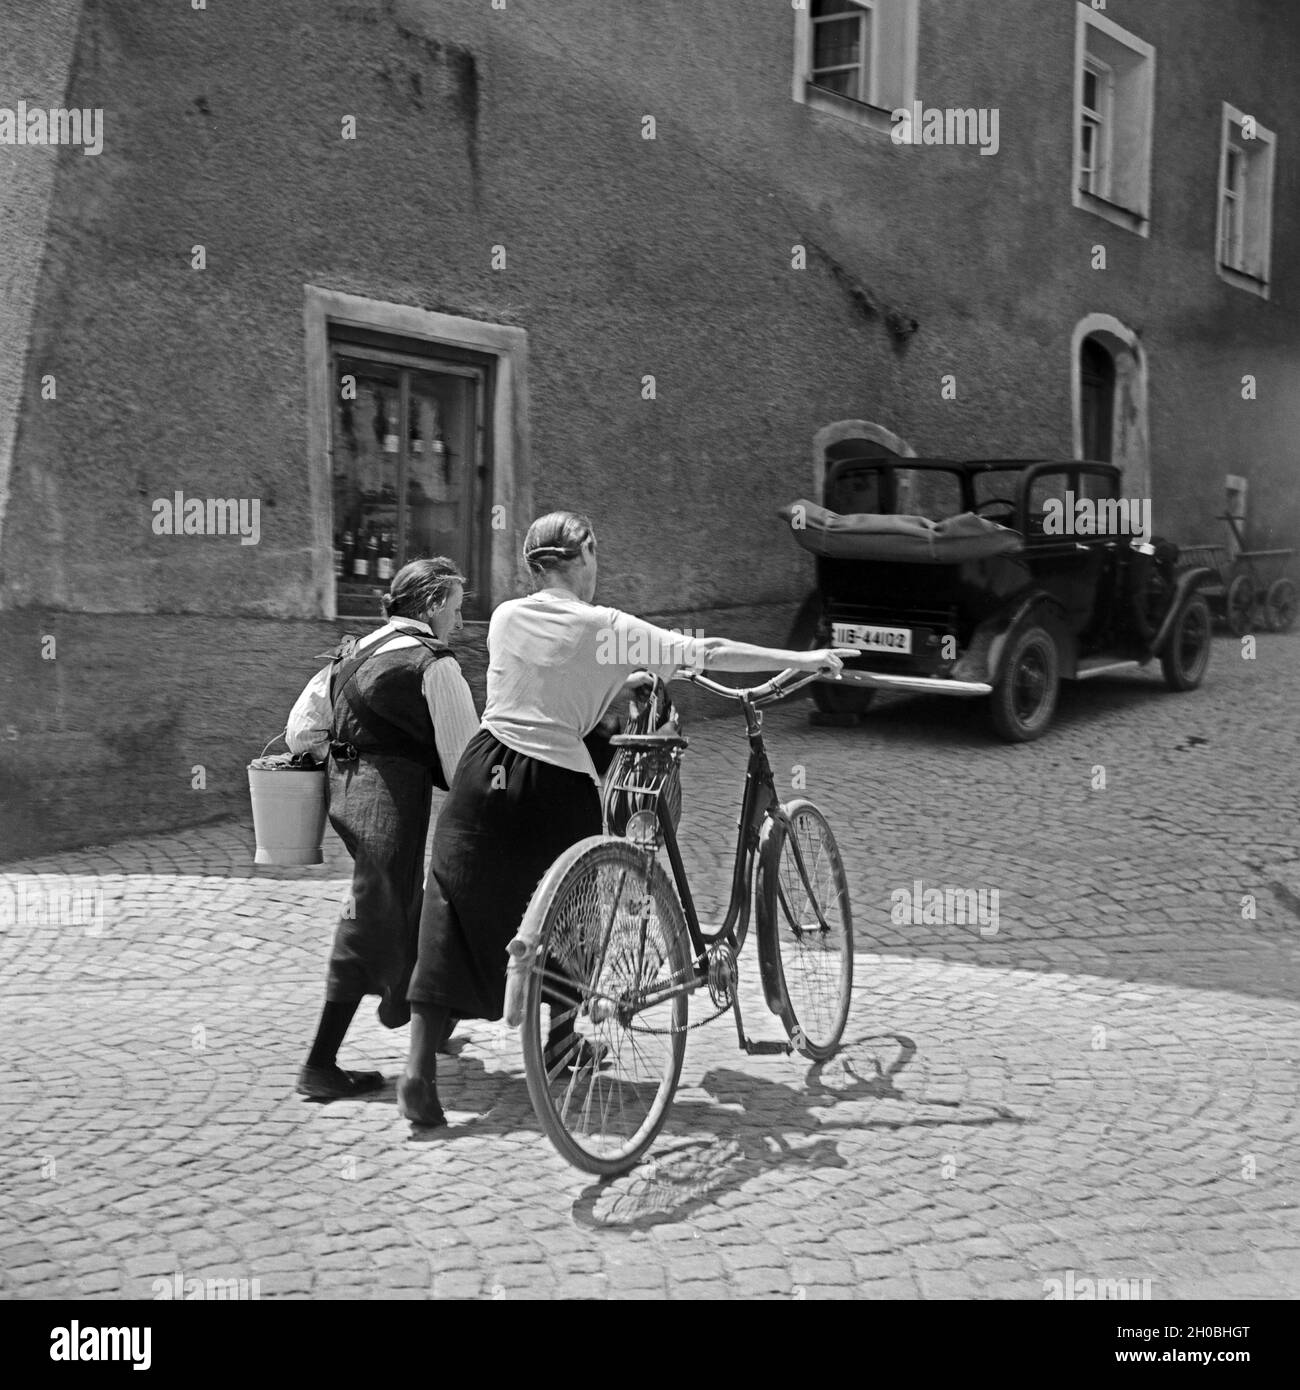 Zwei Frauen schieben ein Fahrrad durch die Gassen von Burghausen, Deutschland 1930er Jahre. Two women on their way home through the lanes of Burghausen, Germany 1930s. Stock Photo